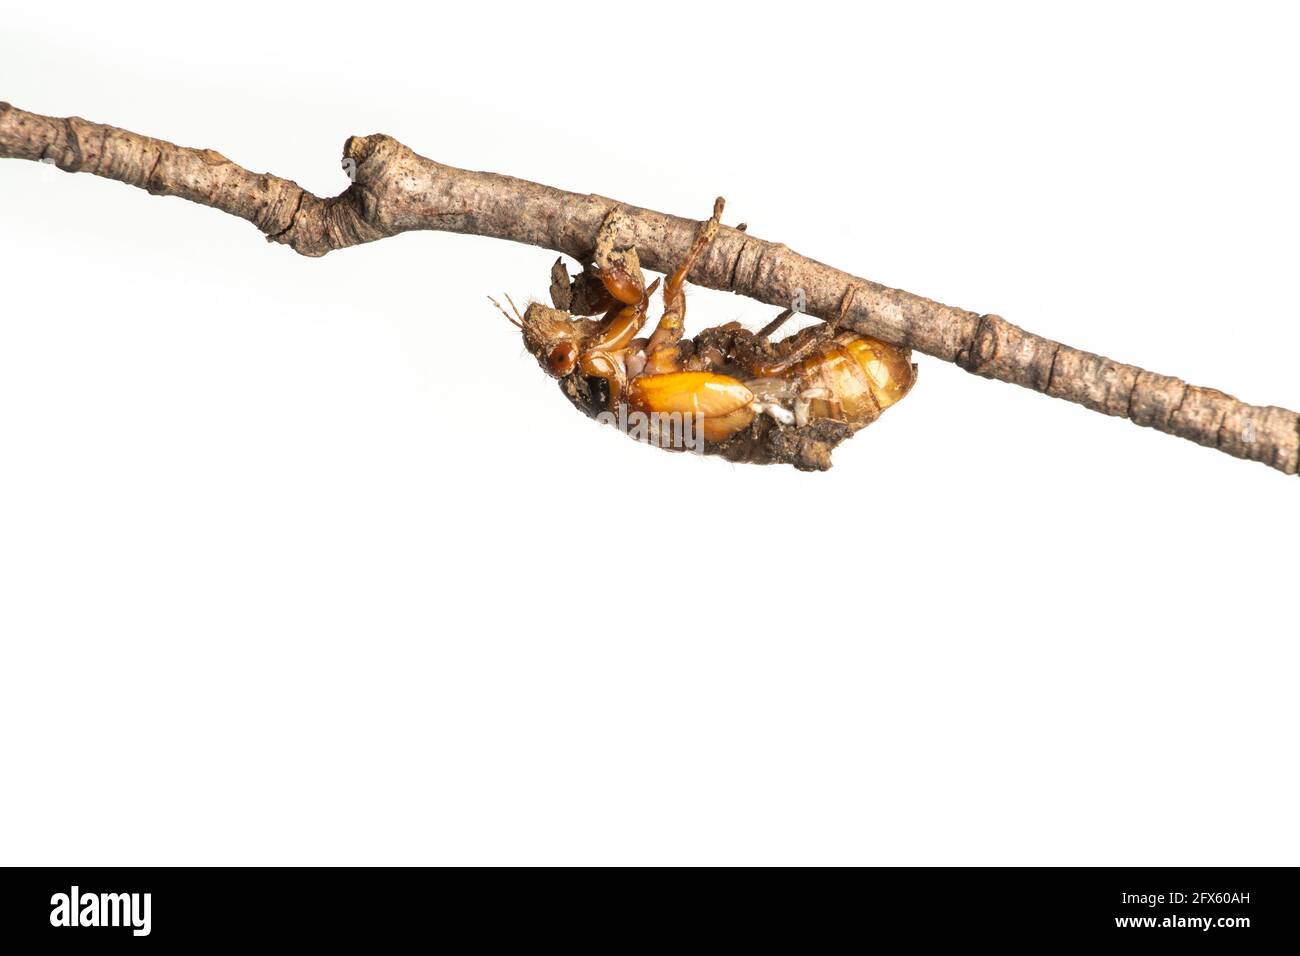 Brood X nymphe périodique de 17 ans cicada sur une branche isolée sur fond blanc Banque D'Images